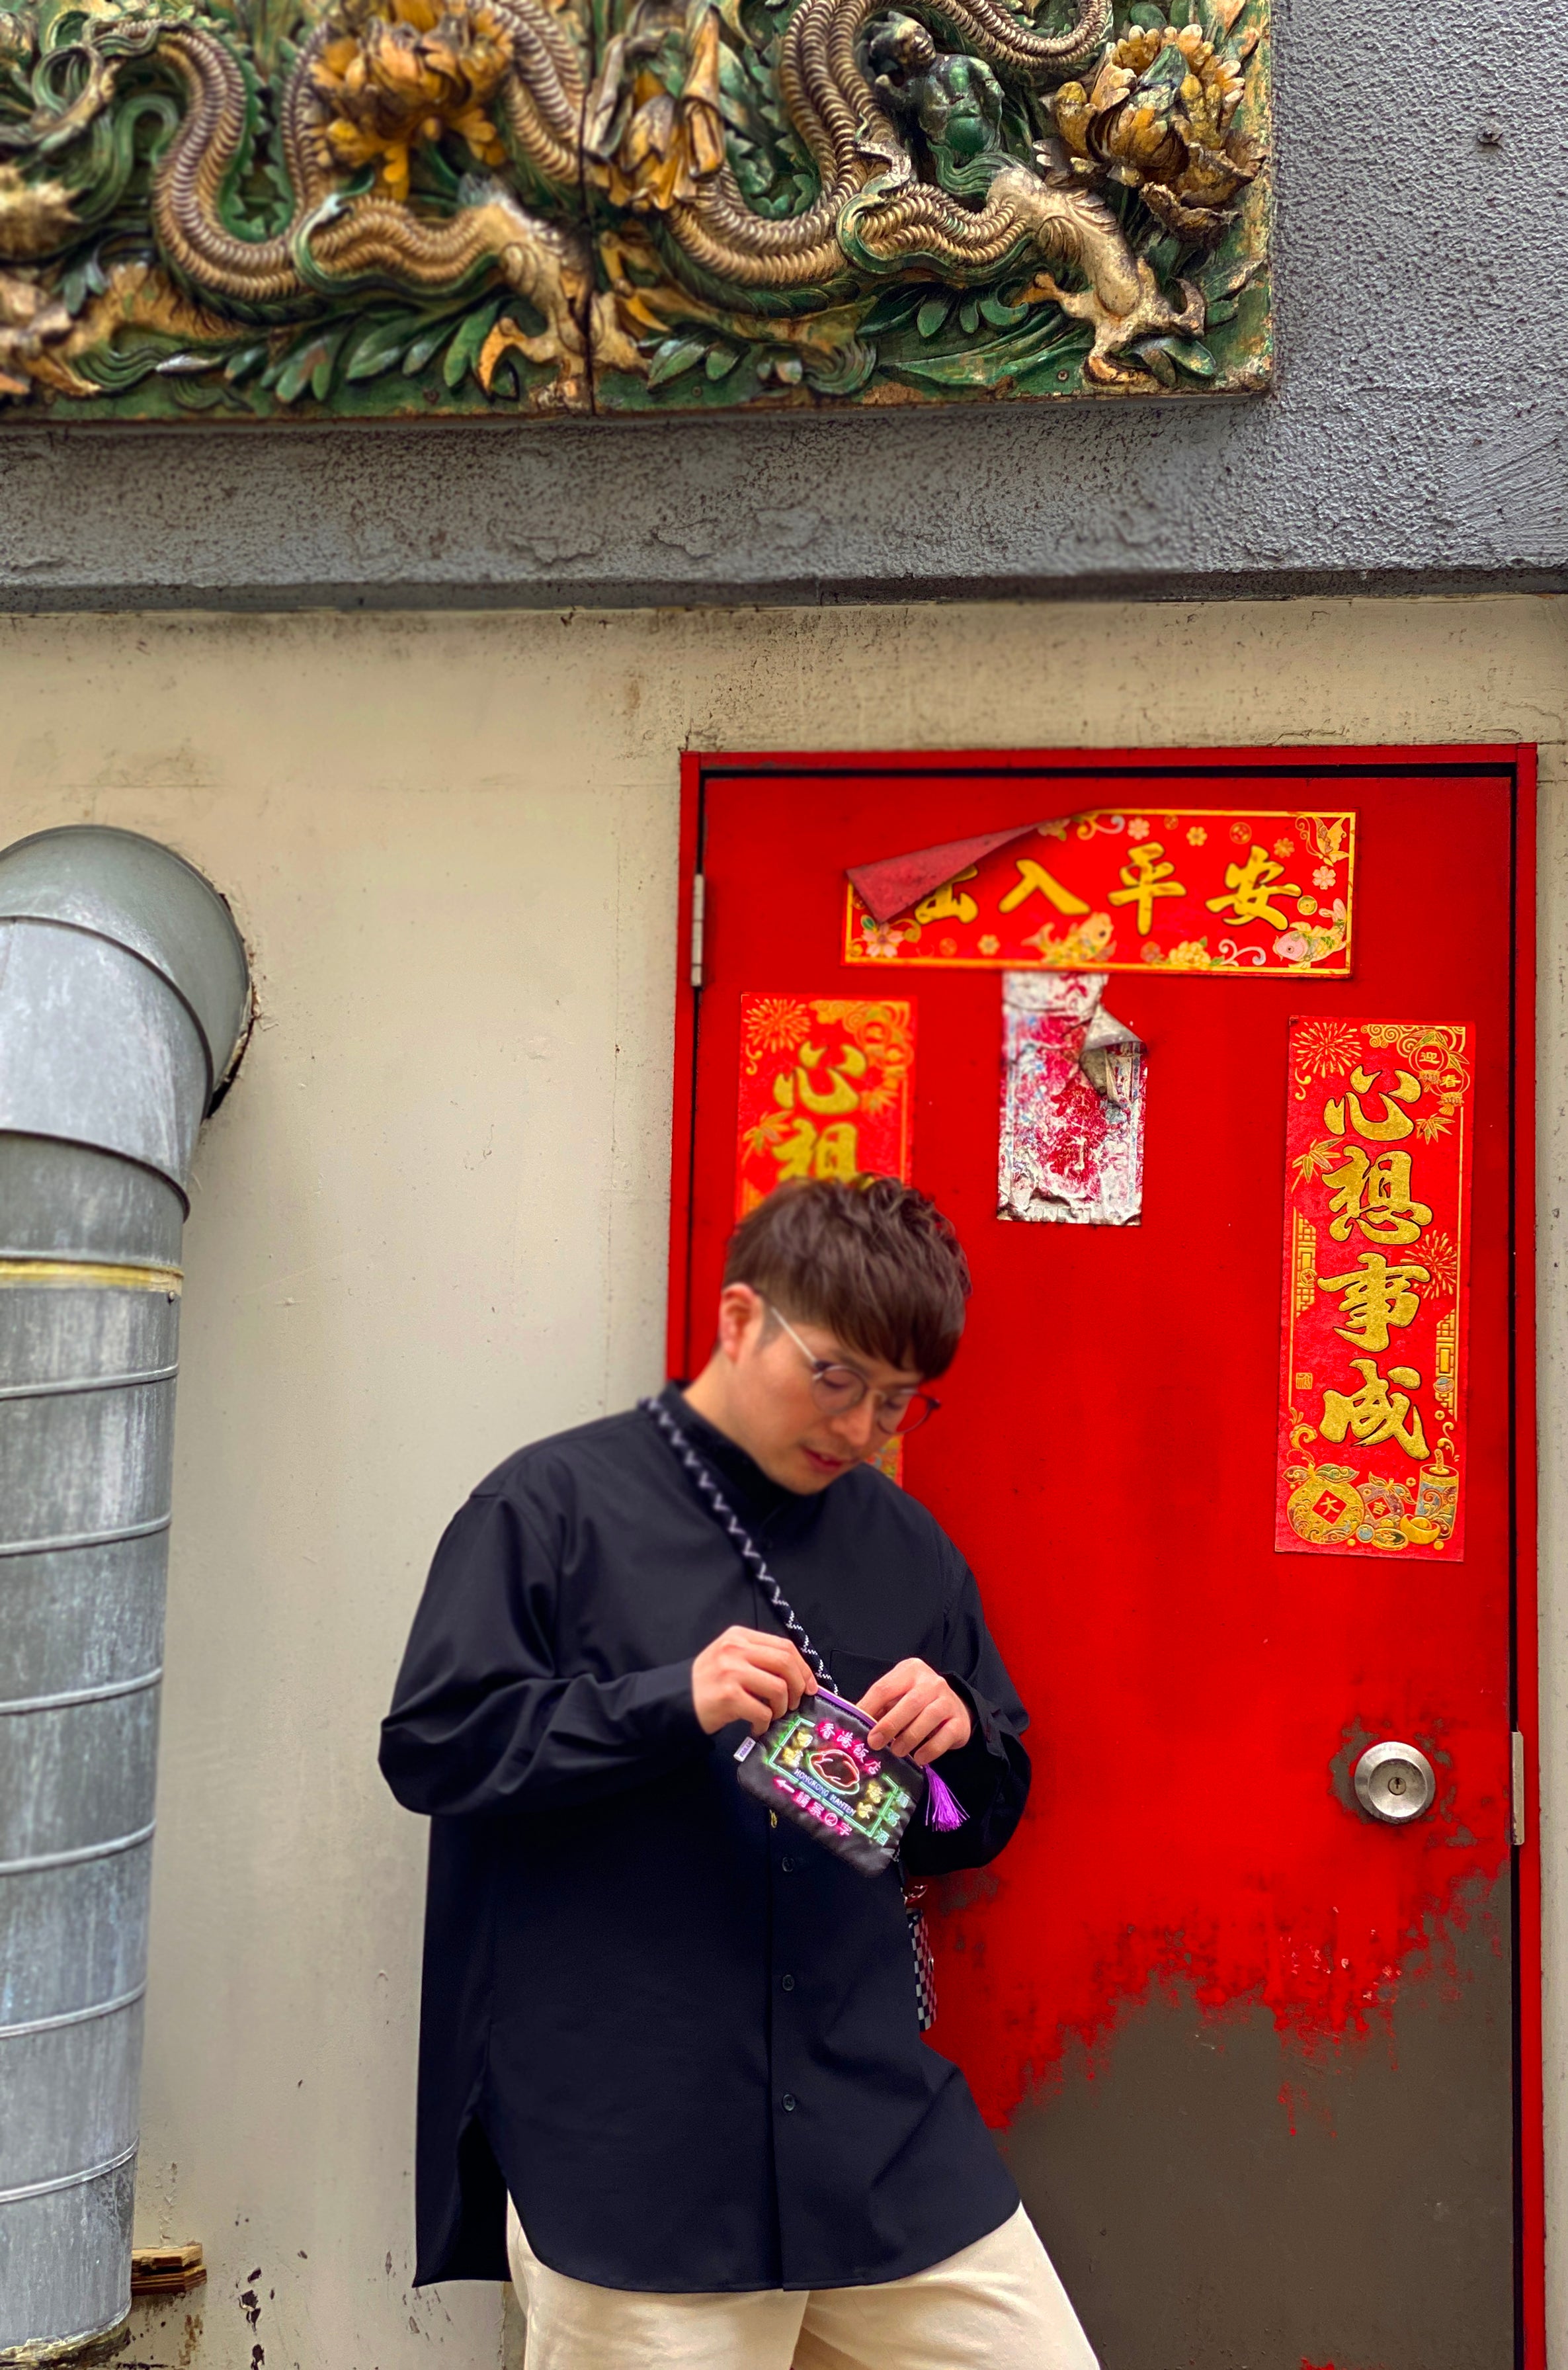 túi đựng khăn giấy neon Hồng Kông